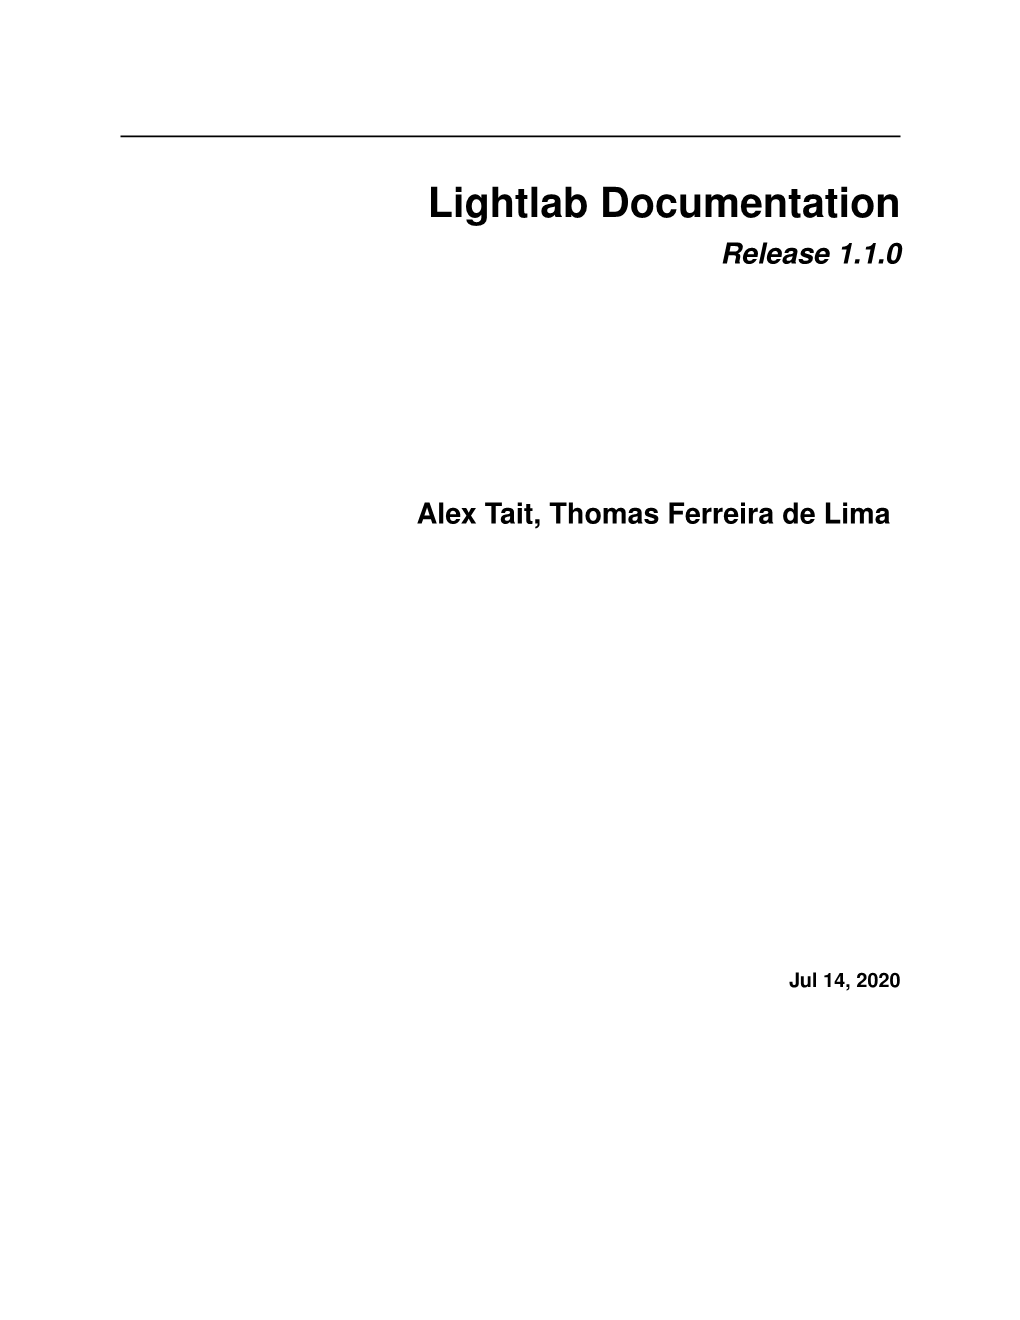 Lightlab Documentation Release 1.1.0